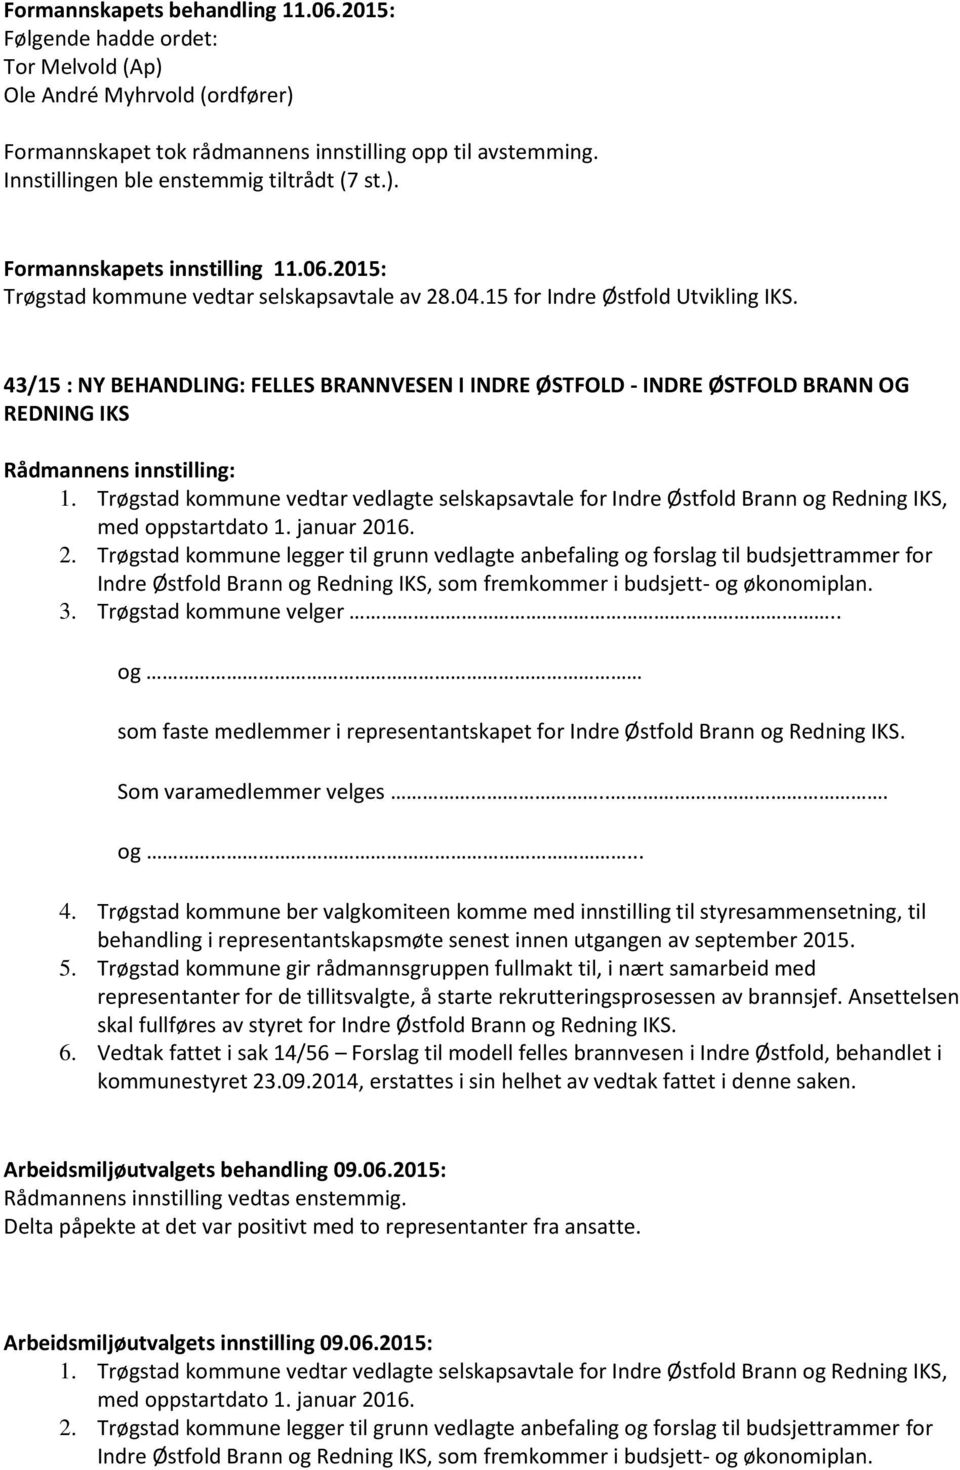 Trøgstad kommune vedtar vedlagte selskapsavtale for Indre Østfold Brann og Redning IKS, med oppstartdato 1. januar 20